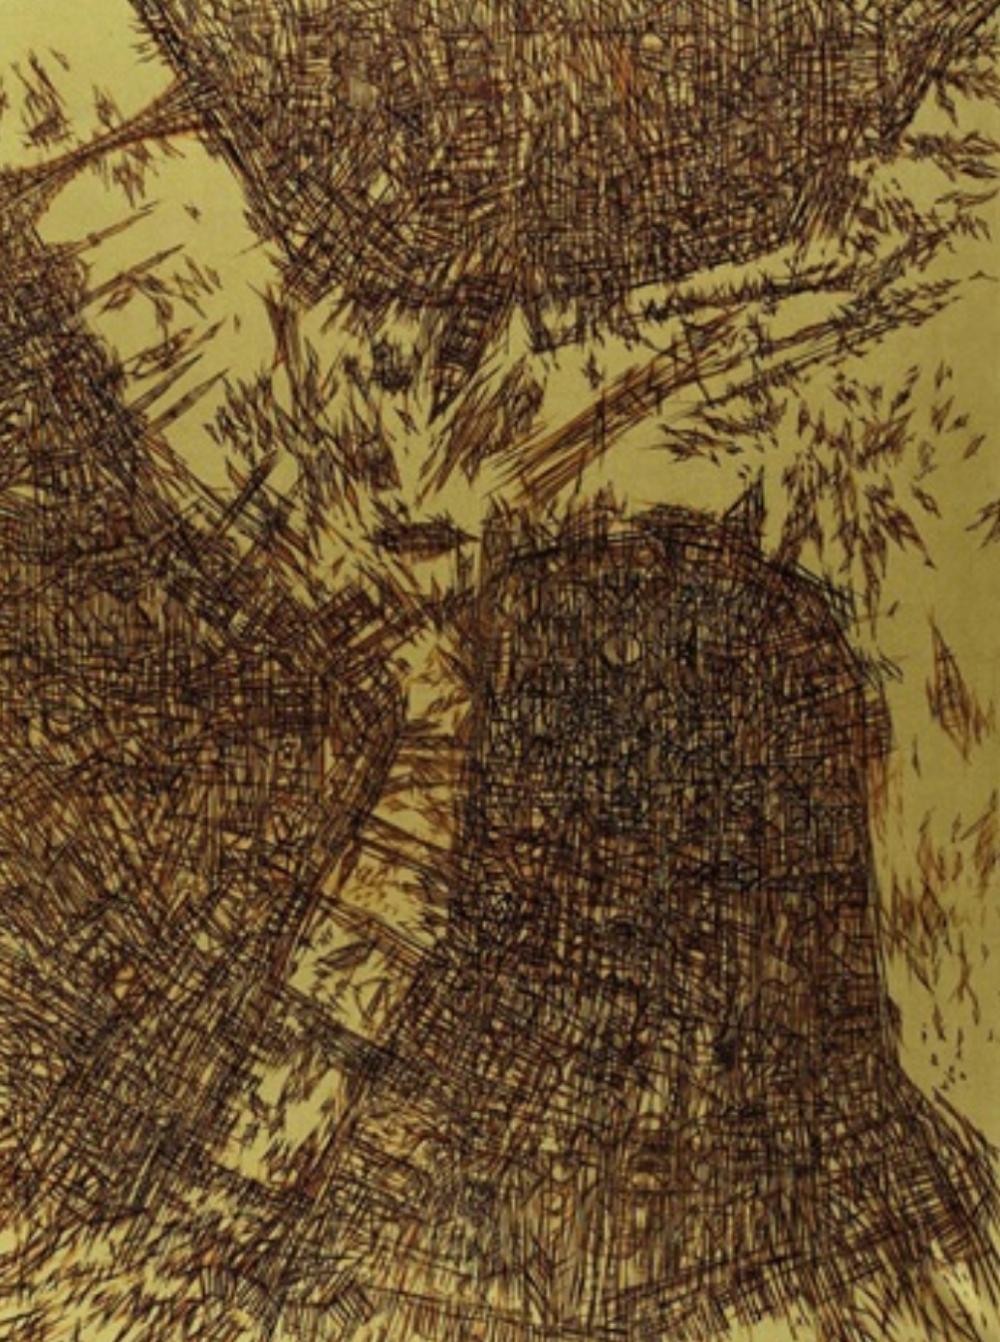 40 Devrim Erbil in İstanbul manzaraları ise 16. yüzyılın topografik minyatürlerini akla getirir.